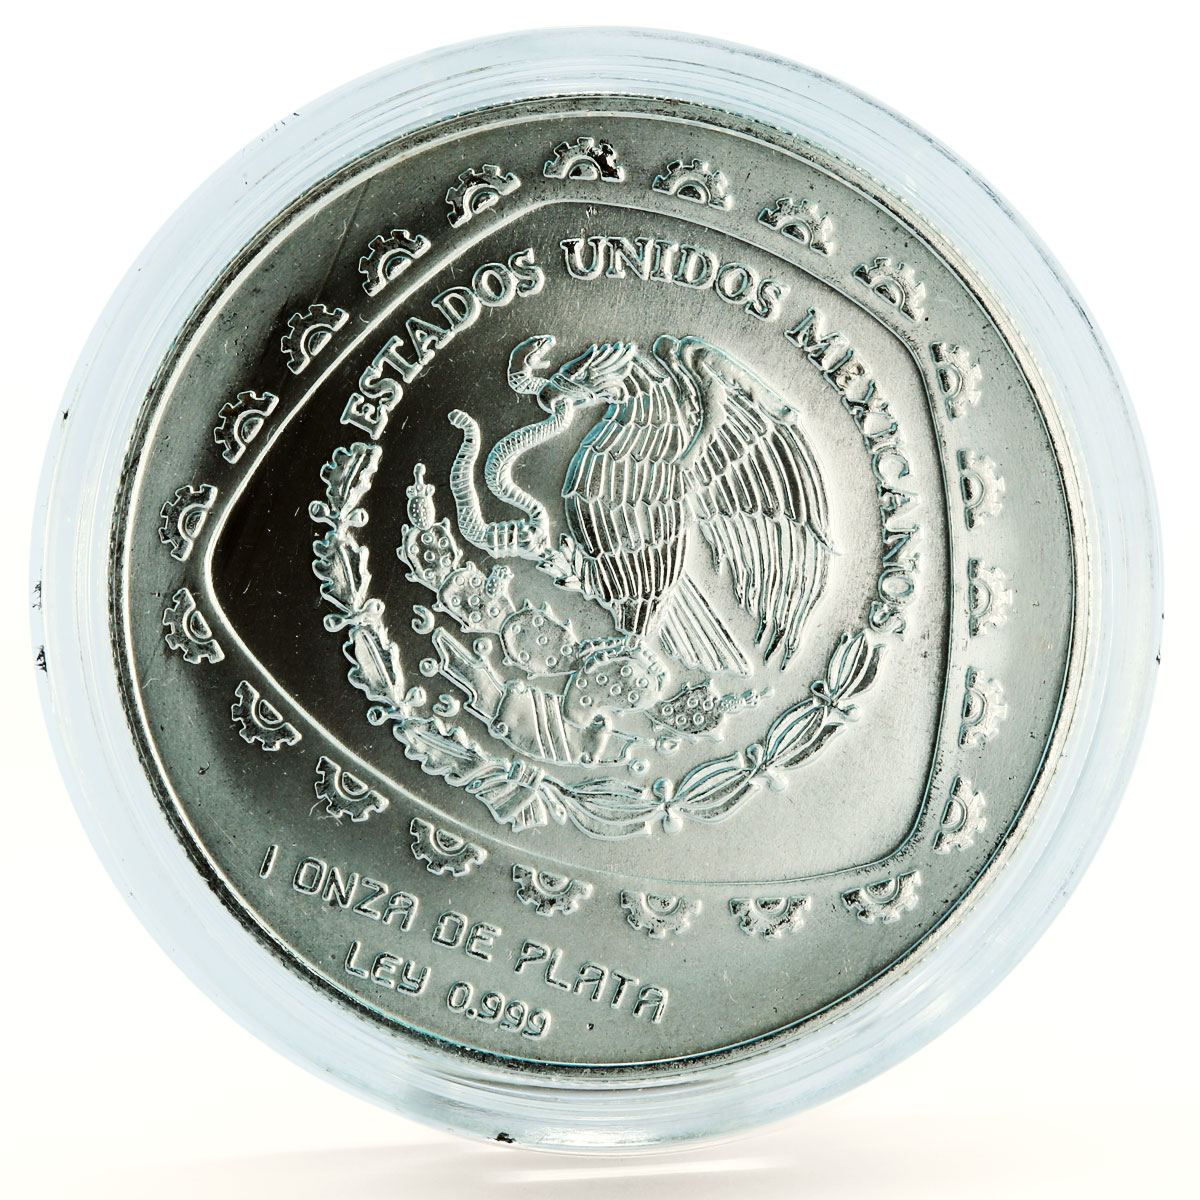 Mexico 5 pesos Precolombina series Saceadote silver coin 1998